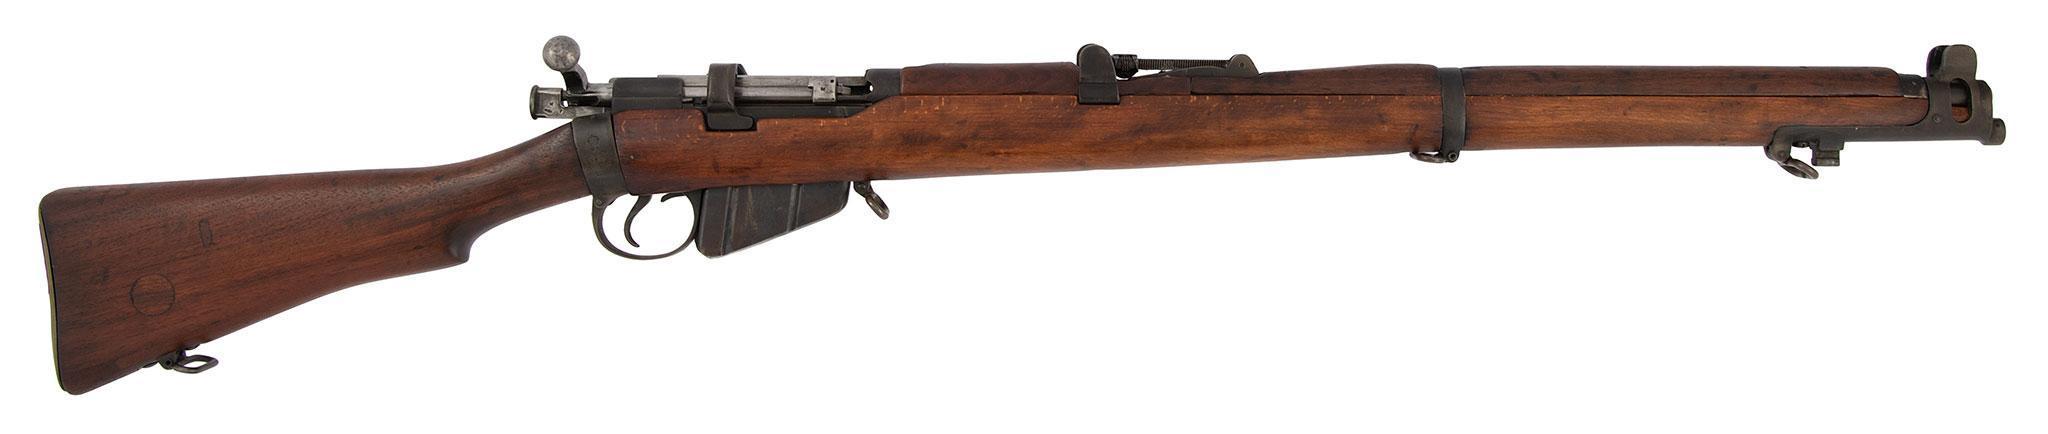 ** British Enfield Mark III Rifle